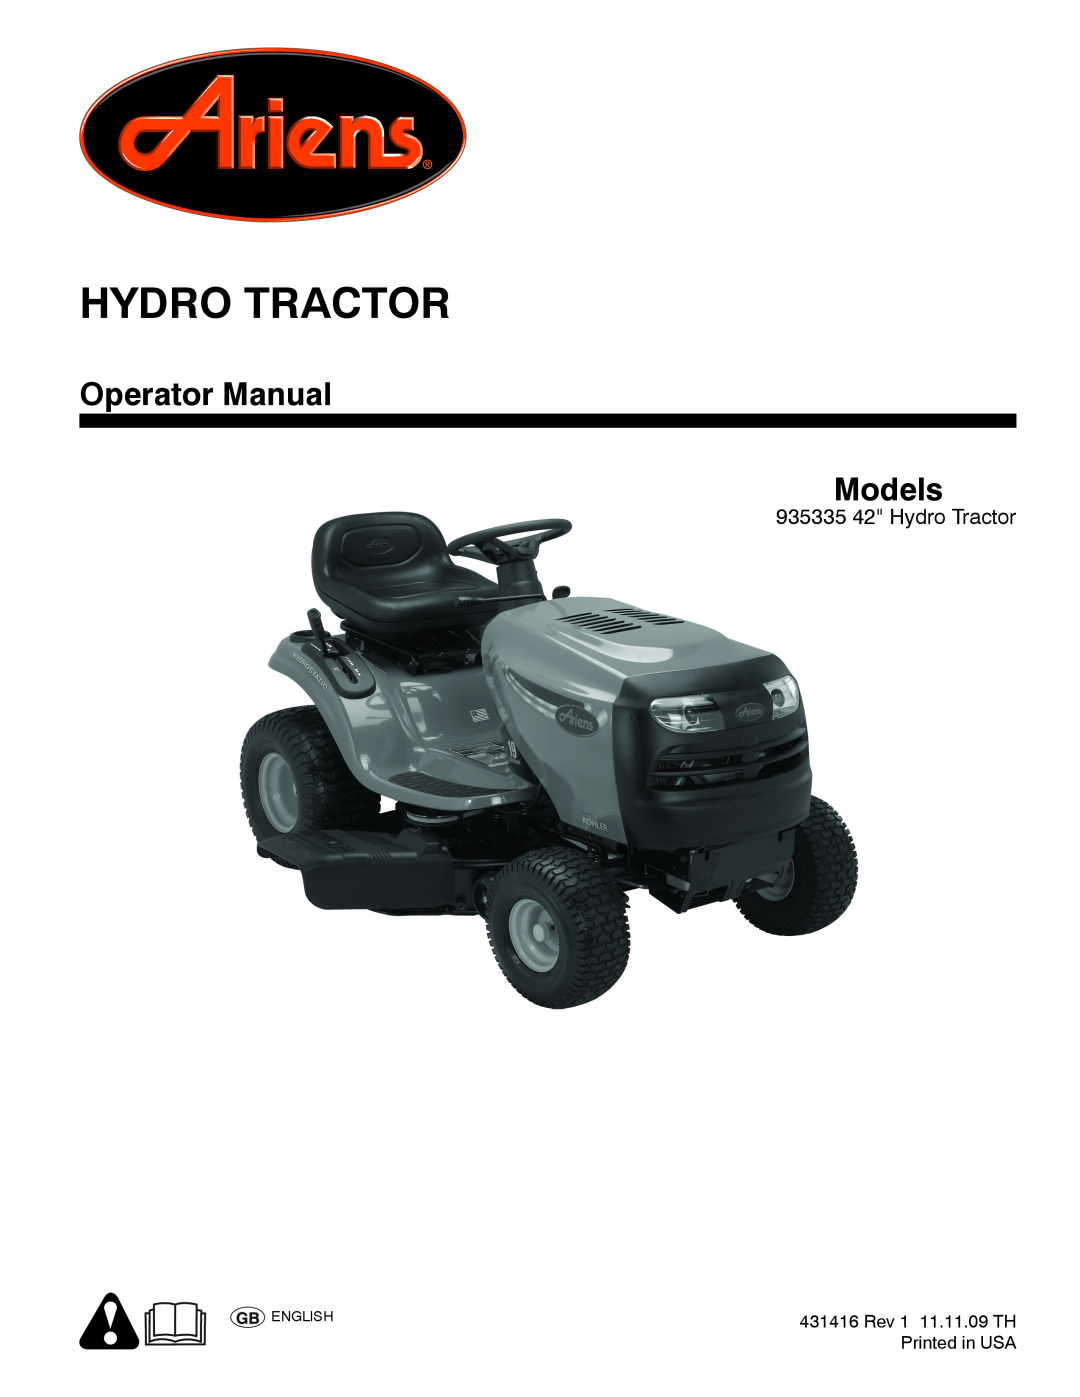 Ariens 935335 42 manual Hydro Tractor, Operator Manual Models 